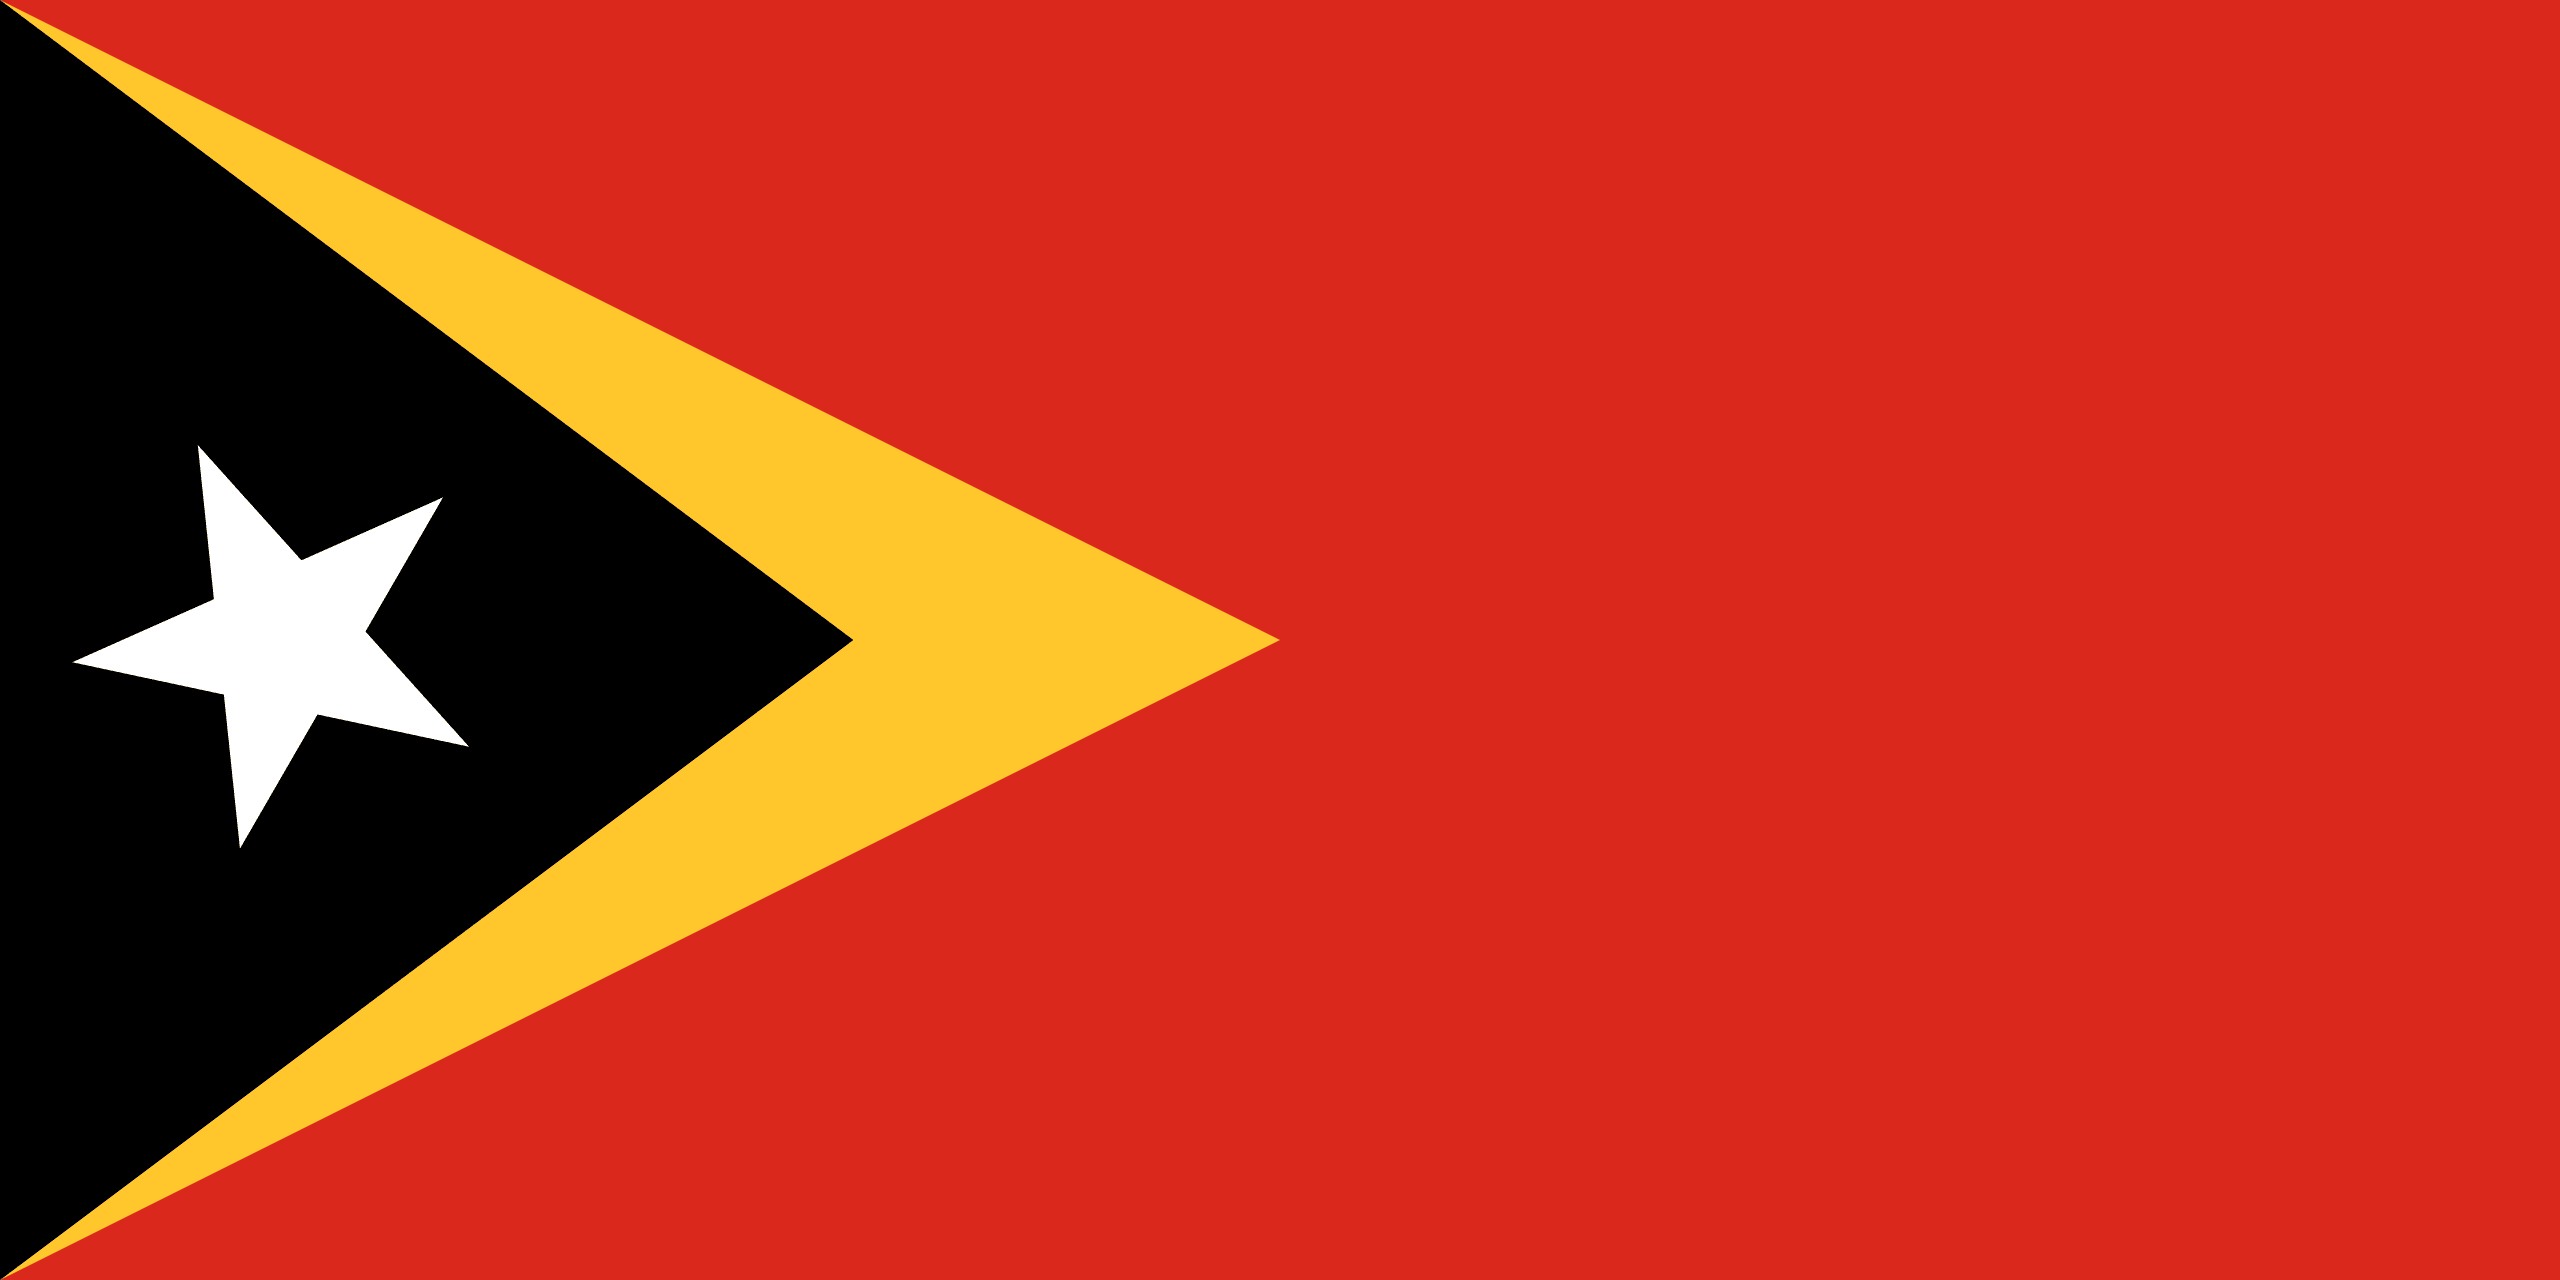 Flagge von Osttimor / Timor-Leste